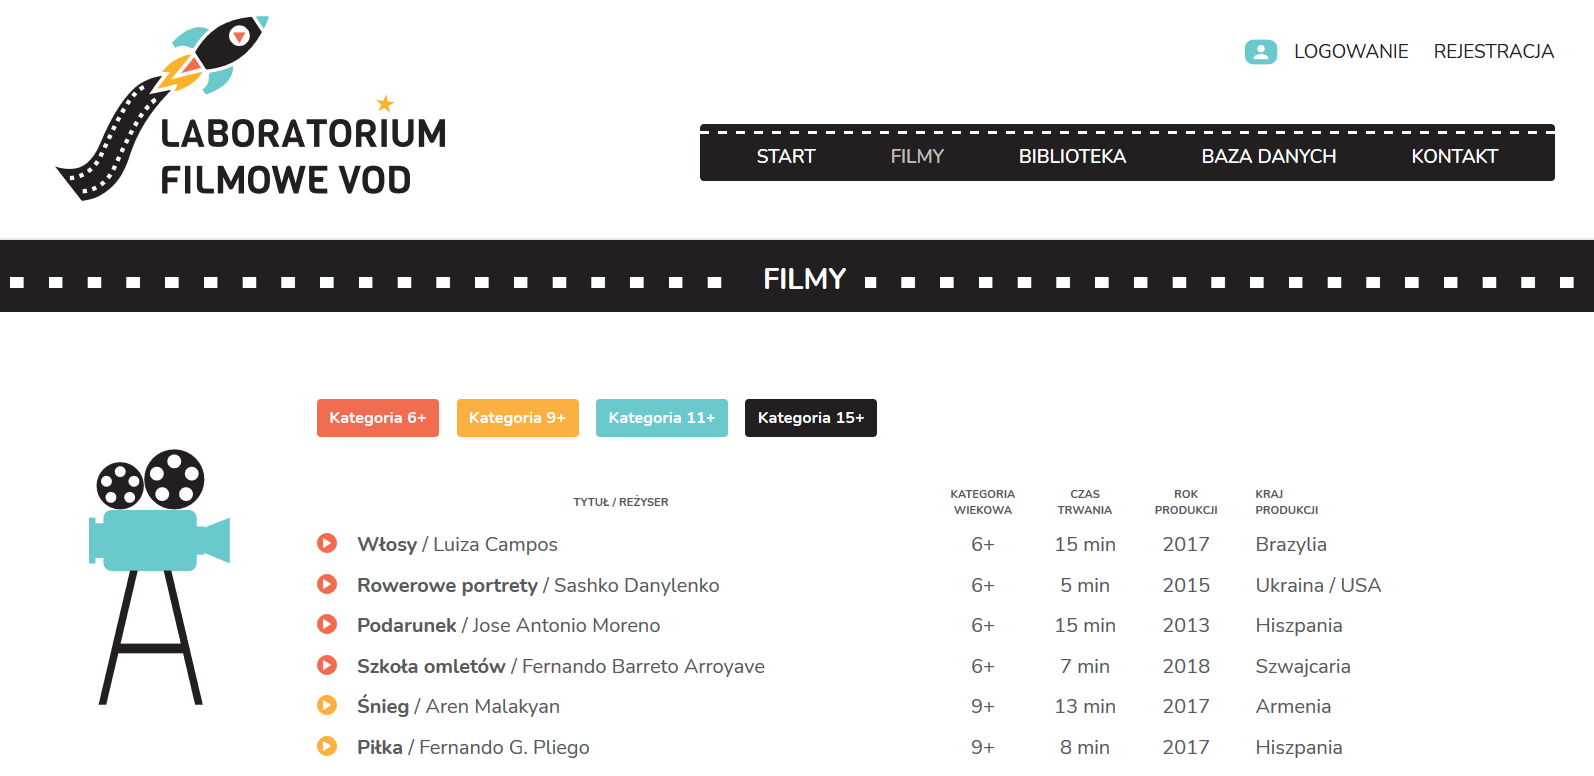 Zaproś małych czytelników na ciekawe pokazy filmowe - projekt Laboratorium Filmowe VOD